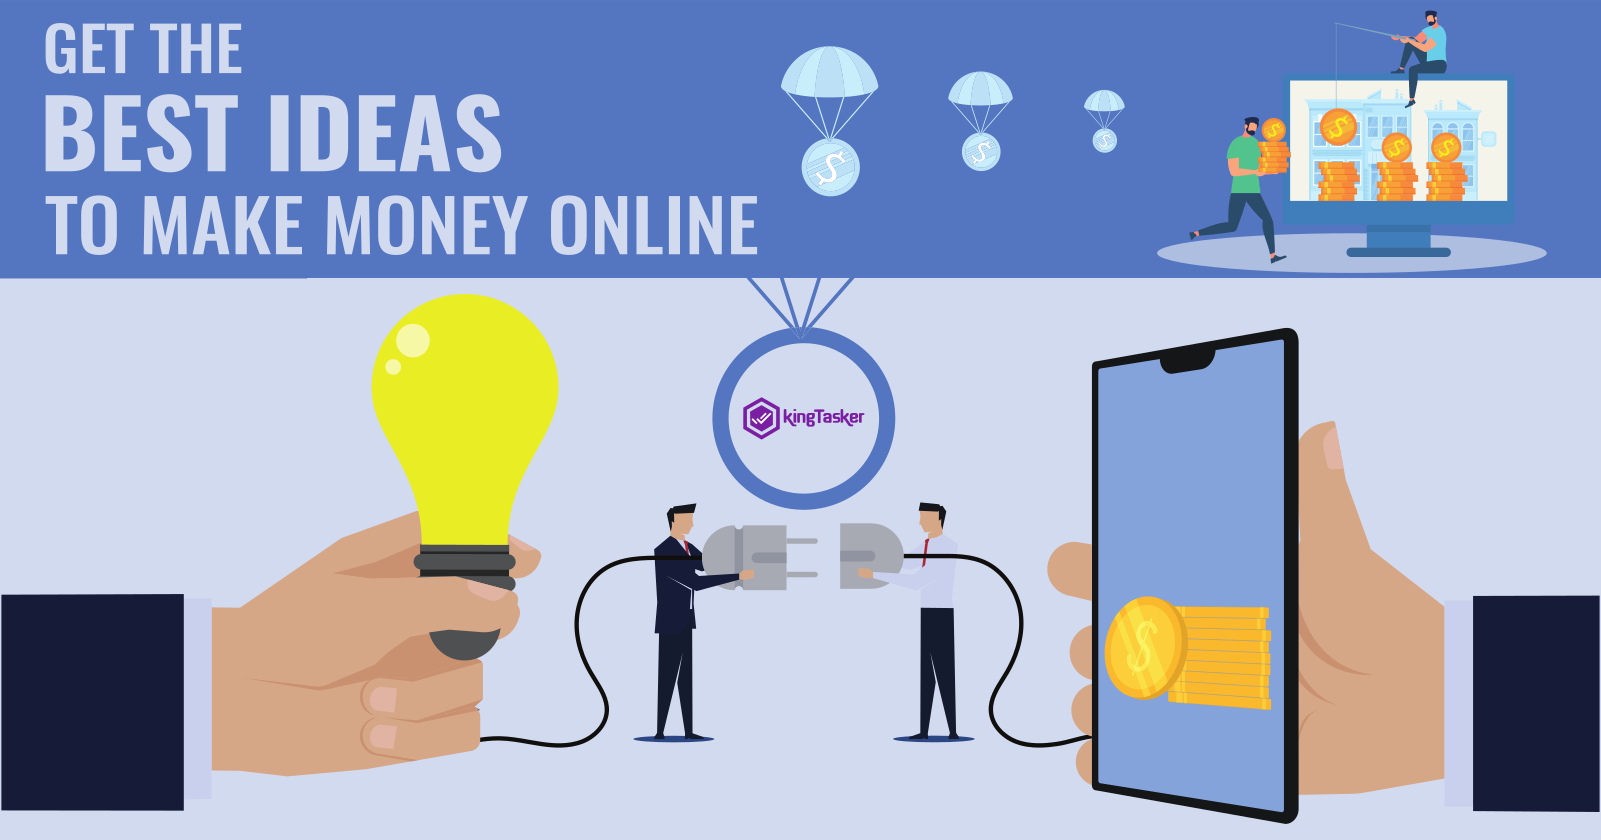 Get the Best Ideas to Make Money Online